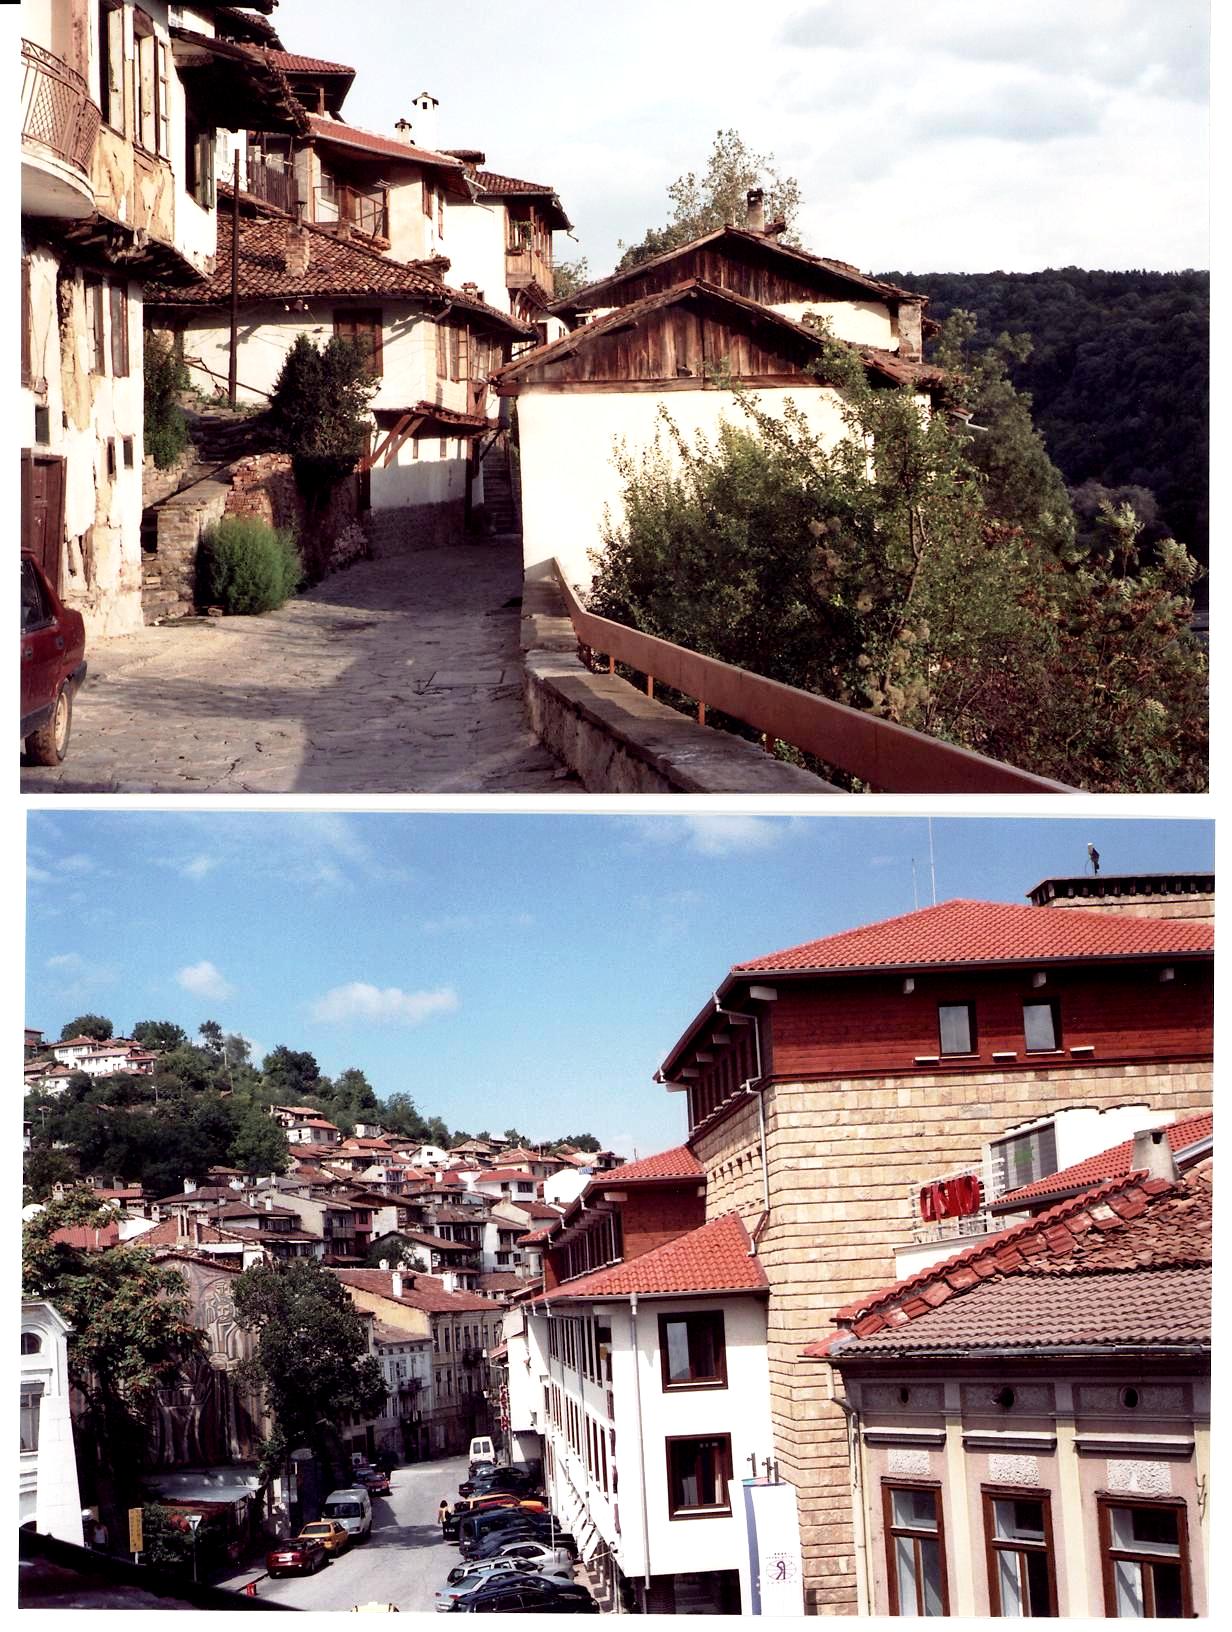  Veliko Tarnovo